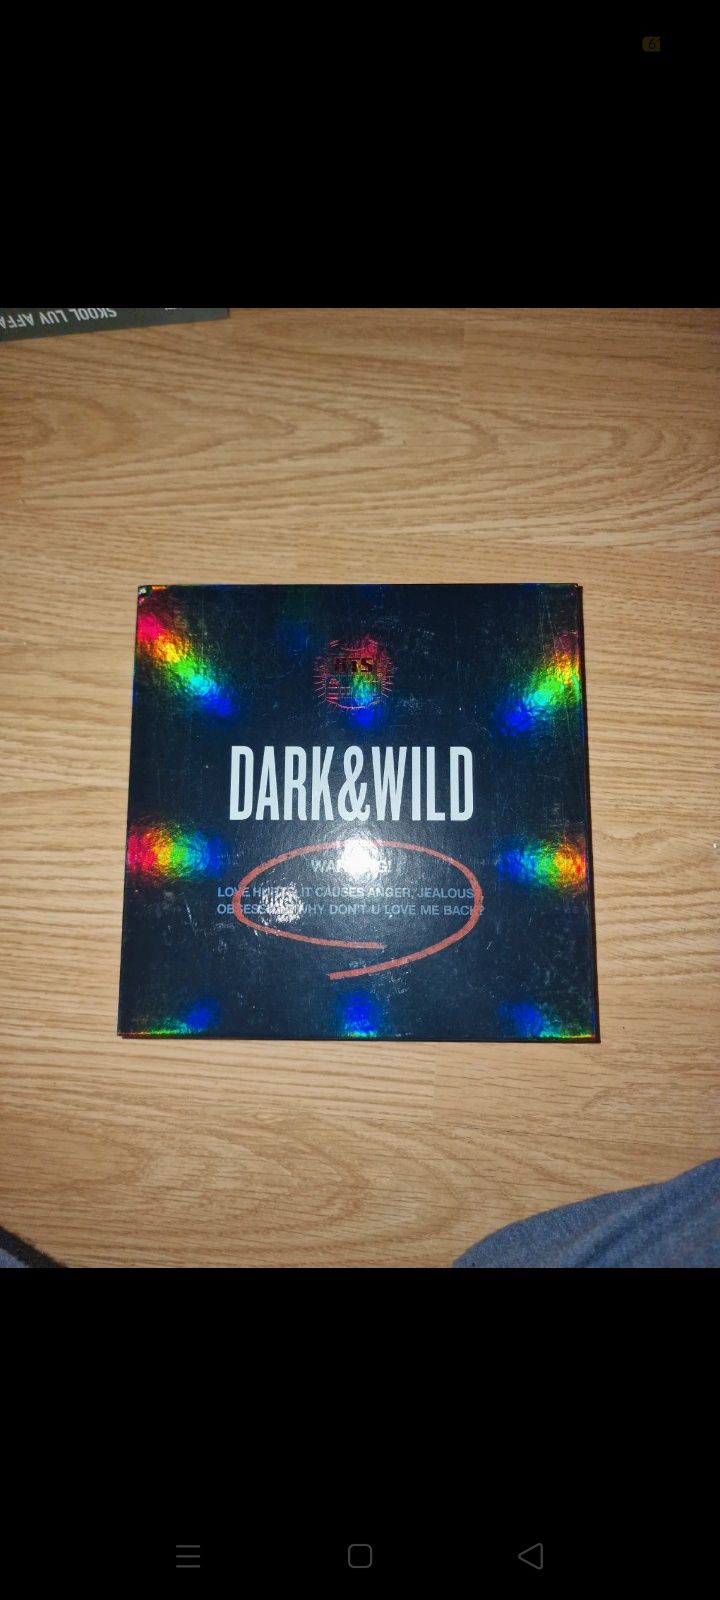 BTS "Dark & Wild" Kpop album